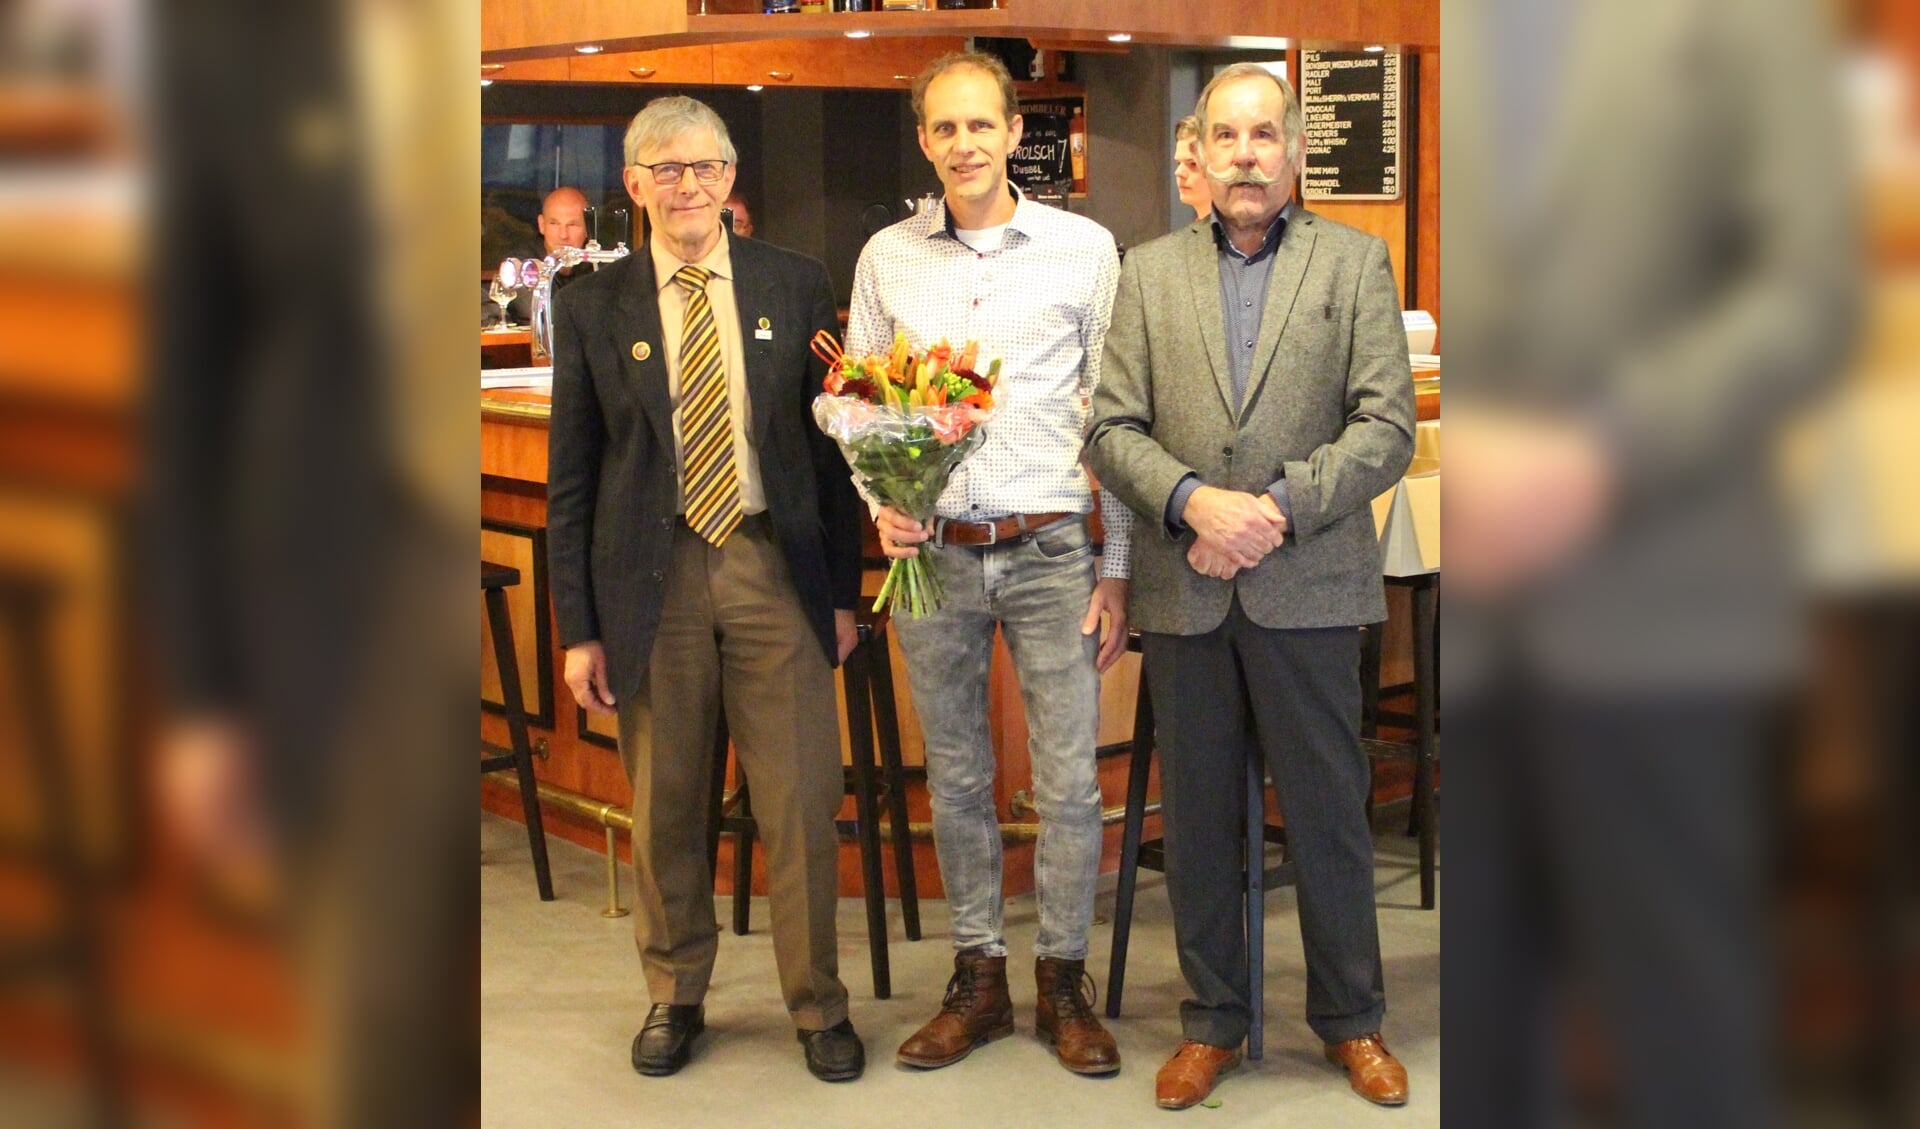 V.l.n.r.: De jubilarissen Bennie Horsting, Robert Ellenkamp en secretaris en hoofdbestuurslid Sjaak van Bennekom van de Nederlandse Bond van Vogelliefhebbers. Foto: PR. 